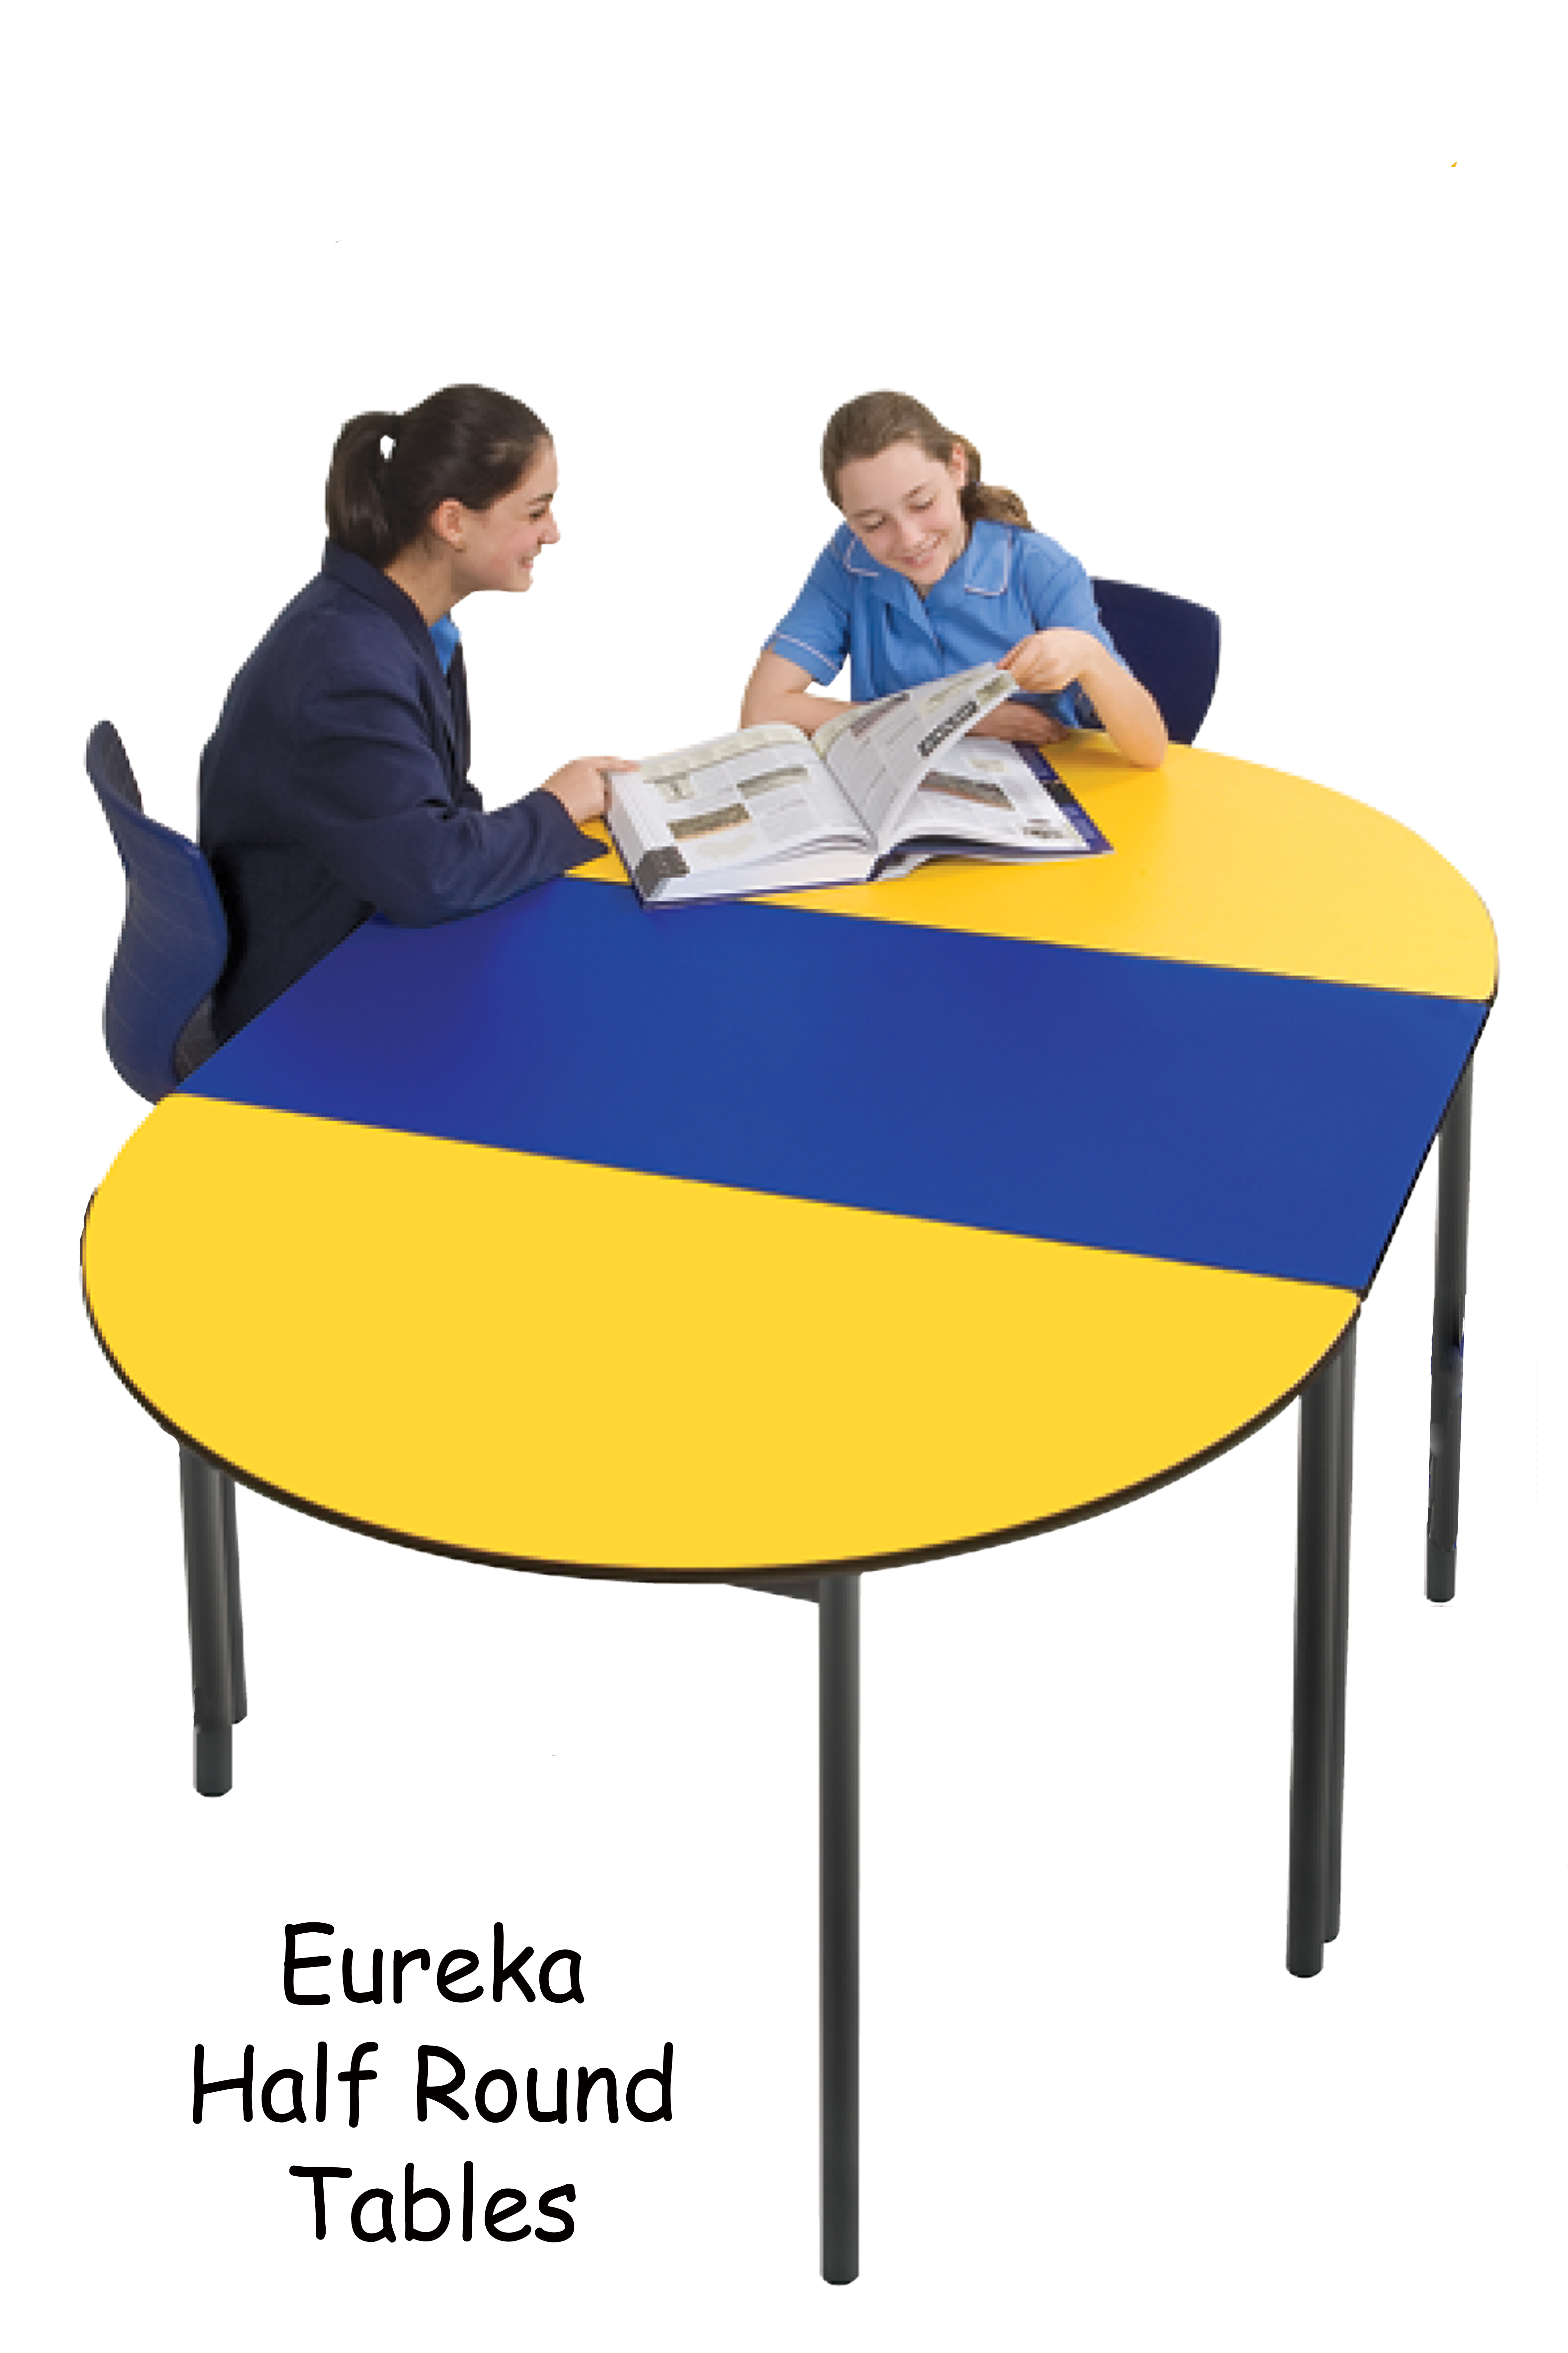 EUREKA HALF ROUND TABLE